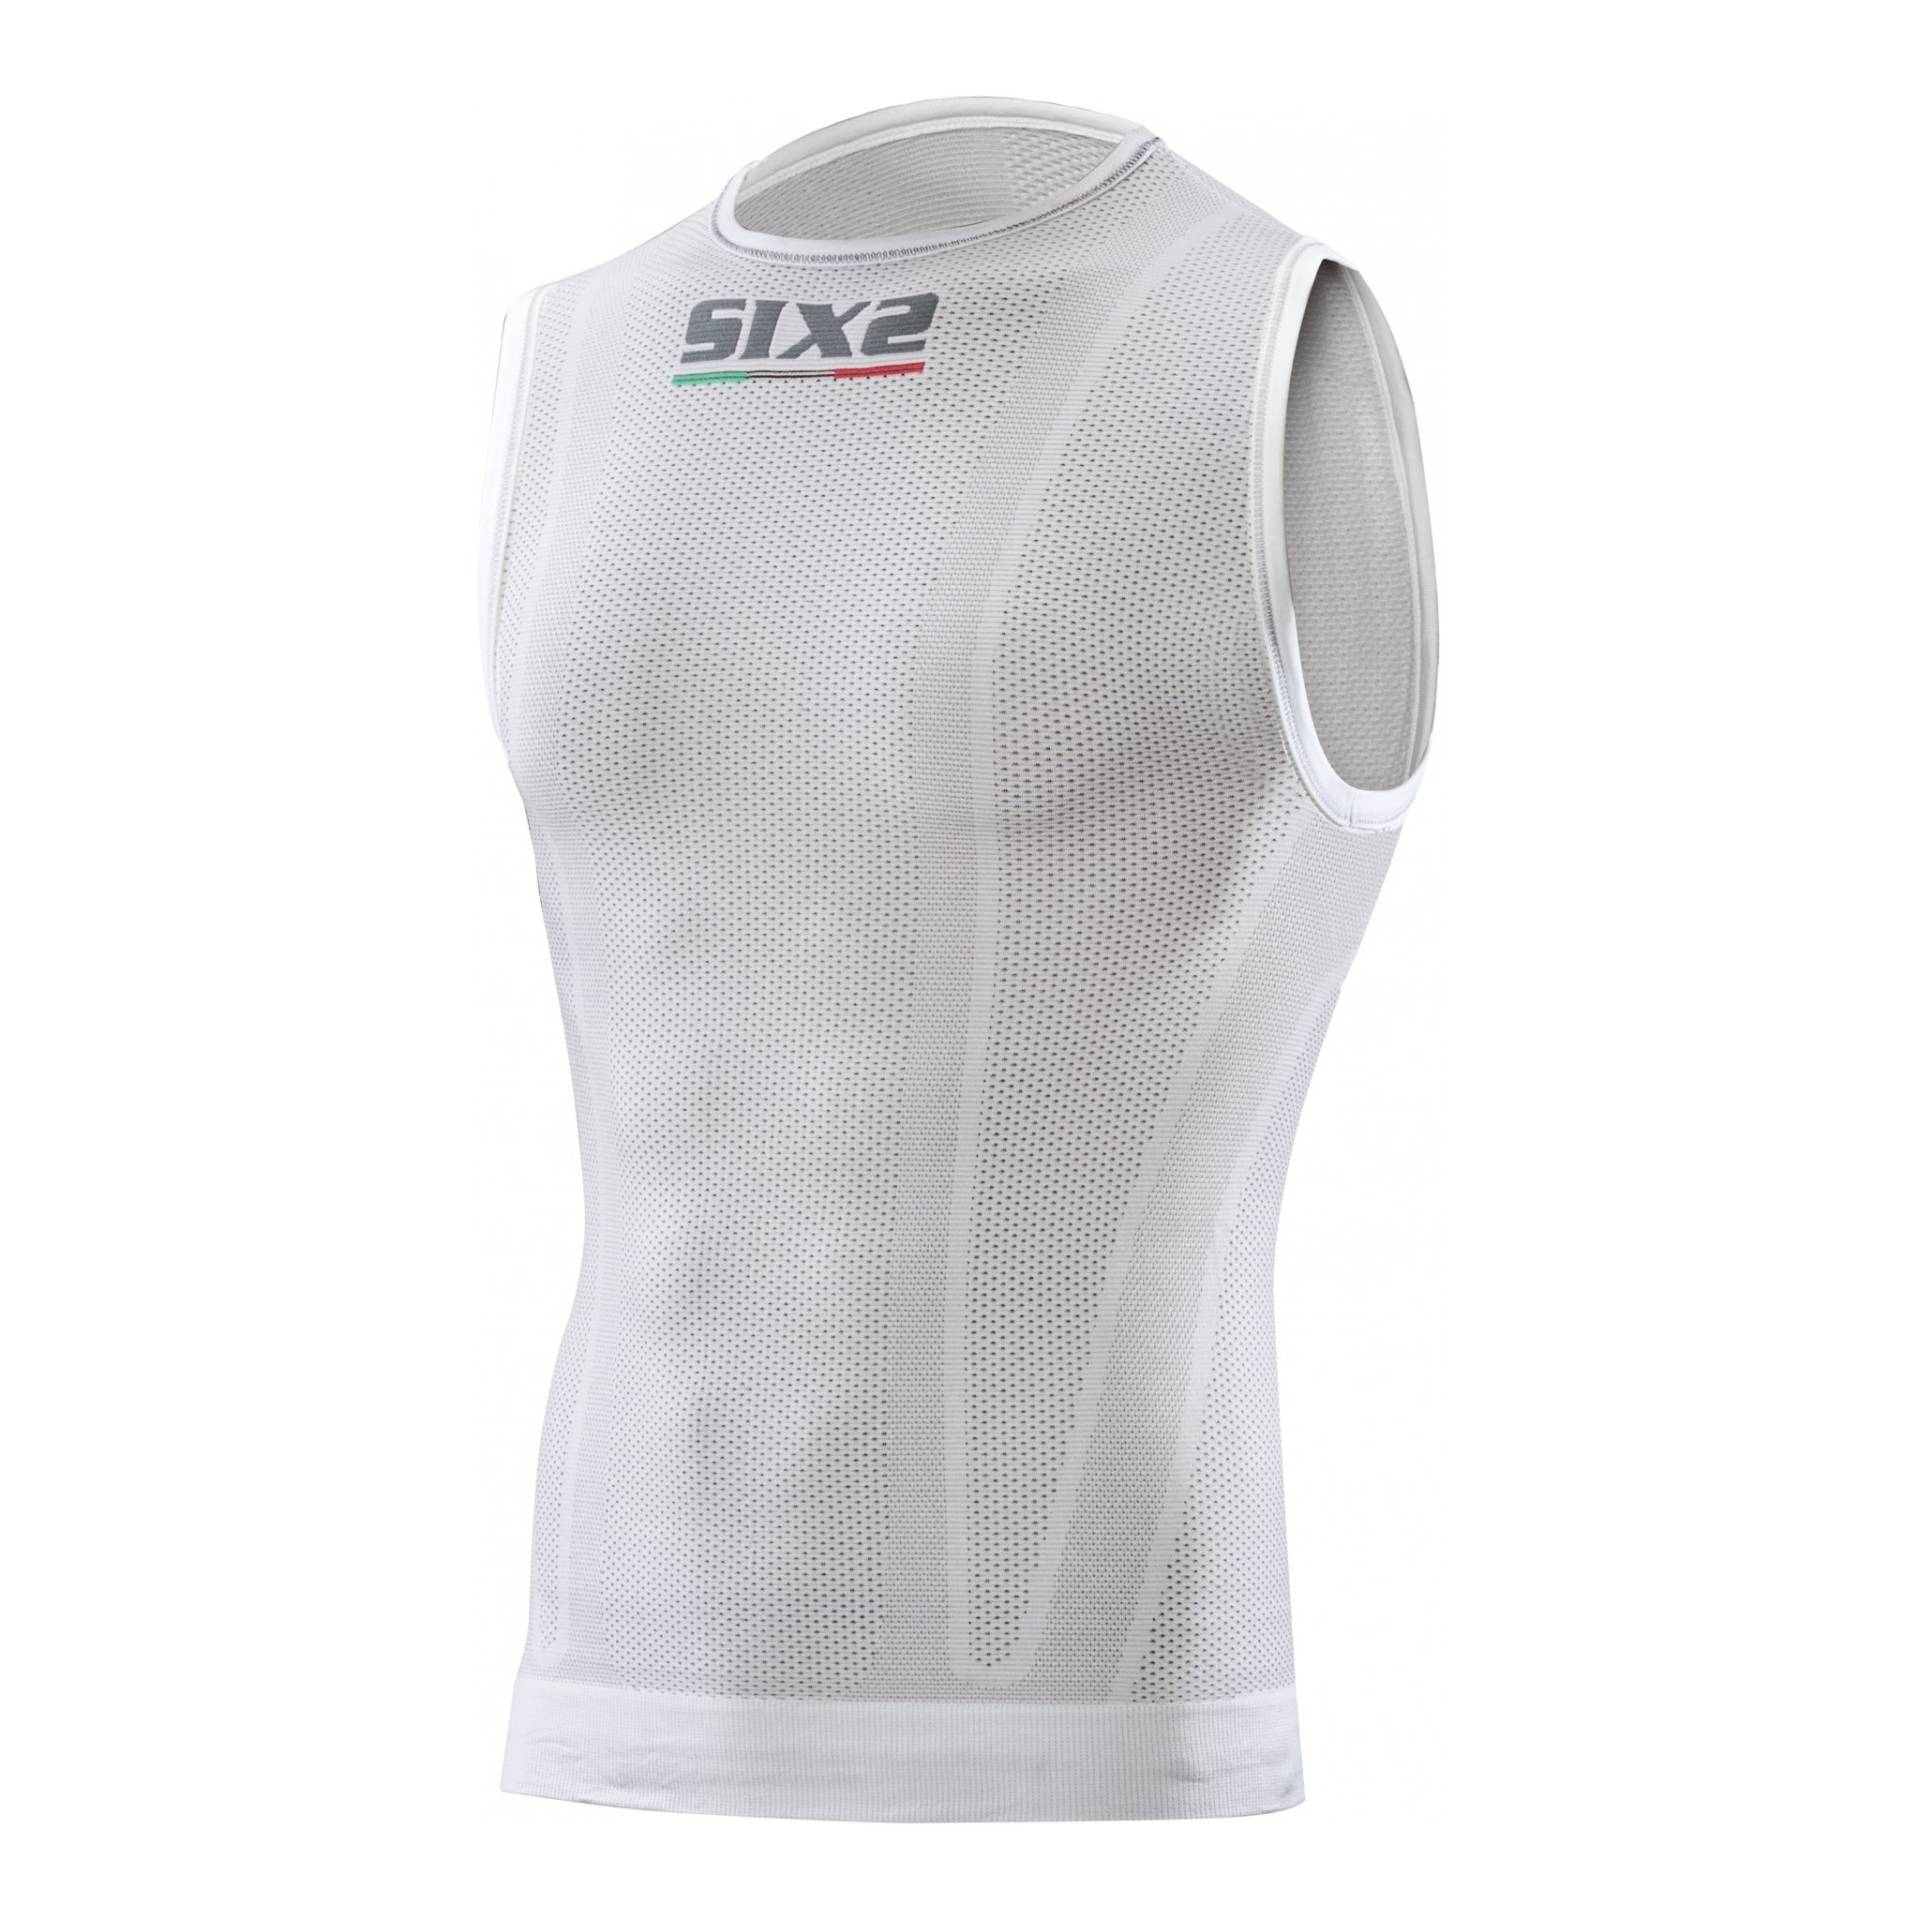 SIXS SMX Range Unterwäsche, ärmellos, Größe XS, Farbe: Weiß von SIXS